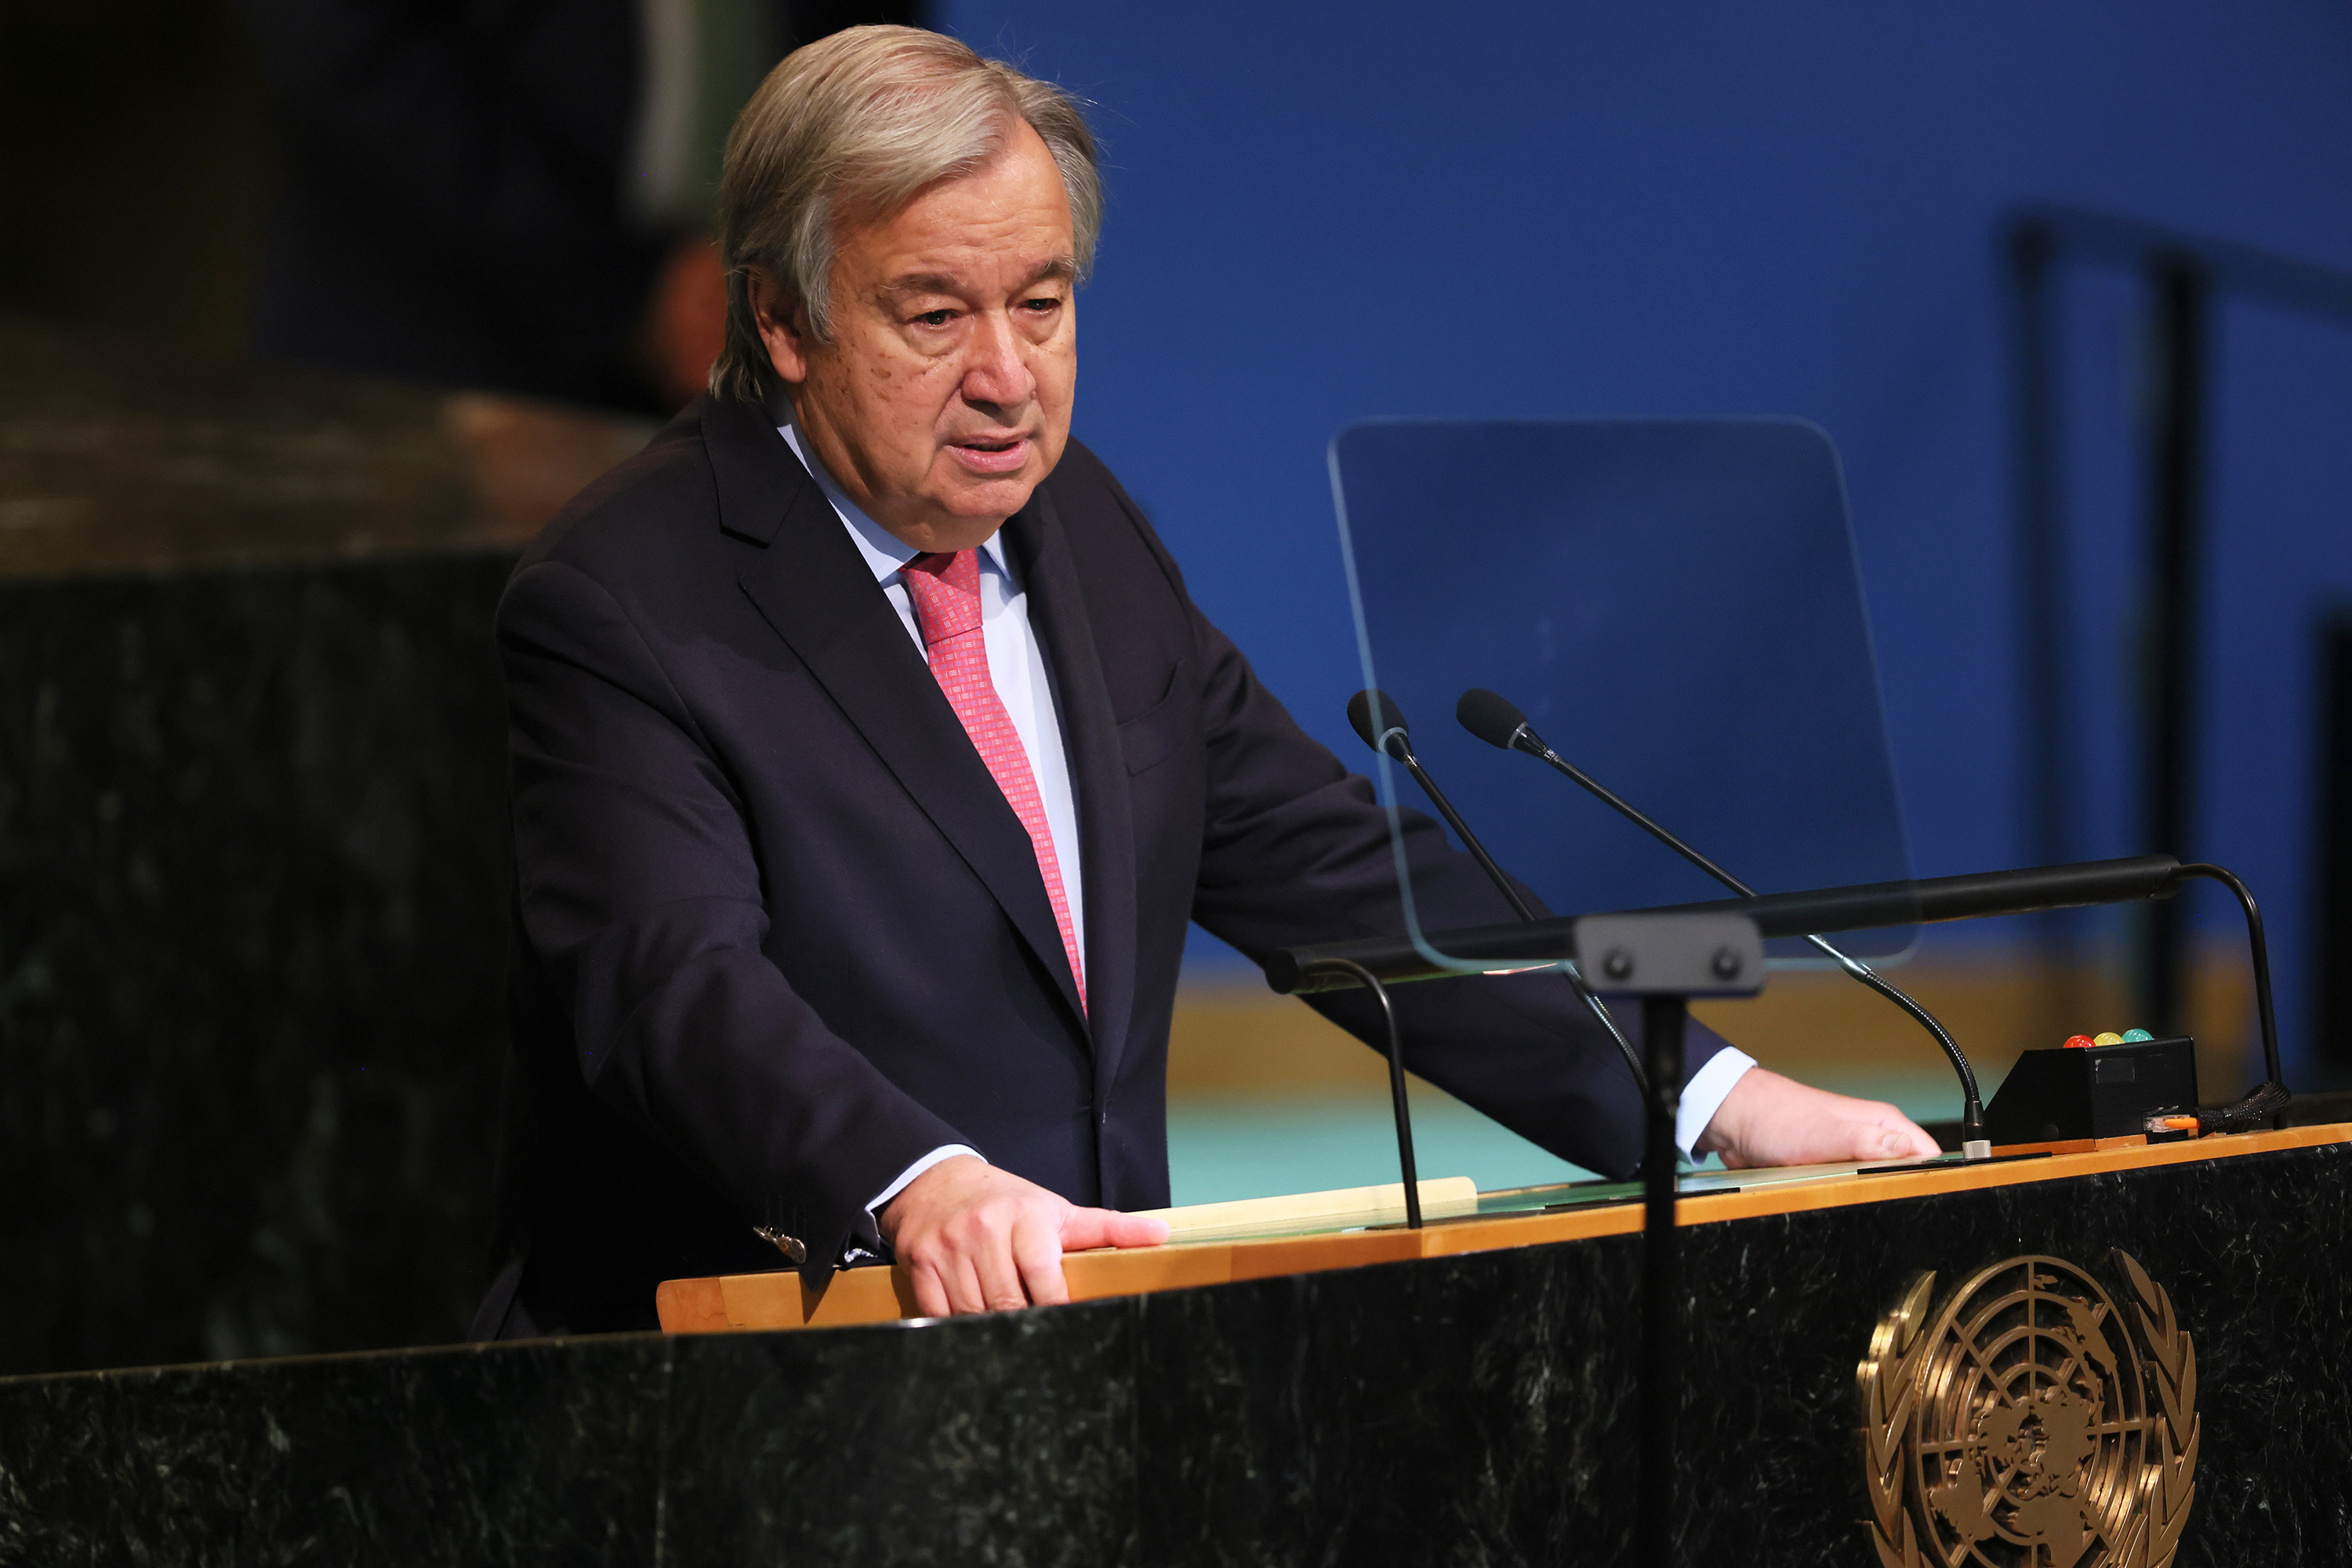 联合国秘书长安东尼奥·古特雷斯于 9 月 20 日在纽约市联合国总部举行的第 77 届联合国大会（UNGA）上发表讲话。 